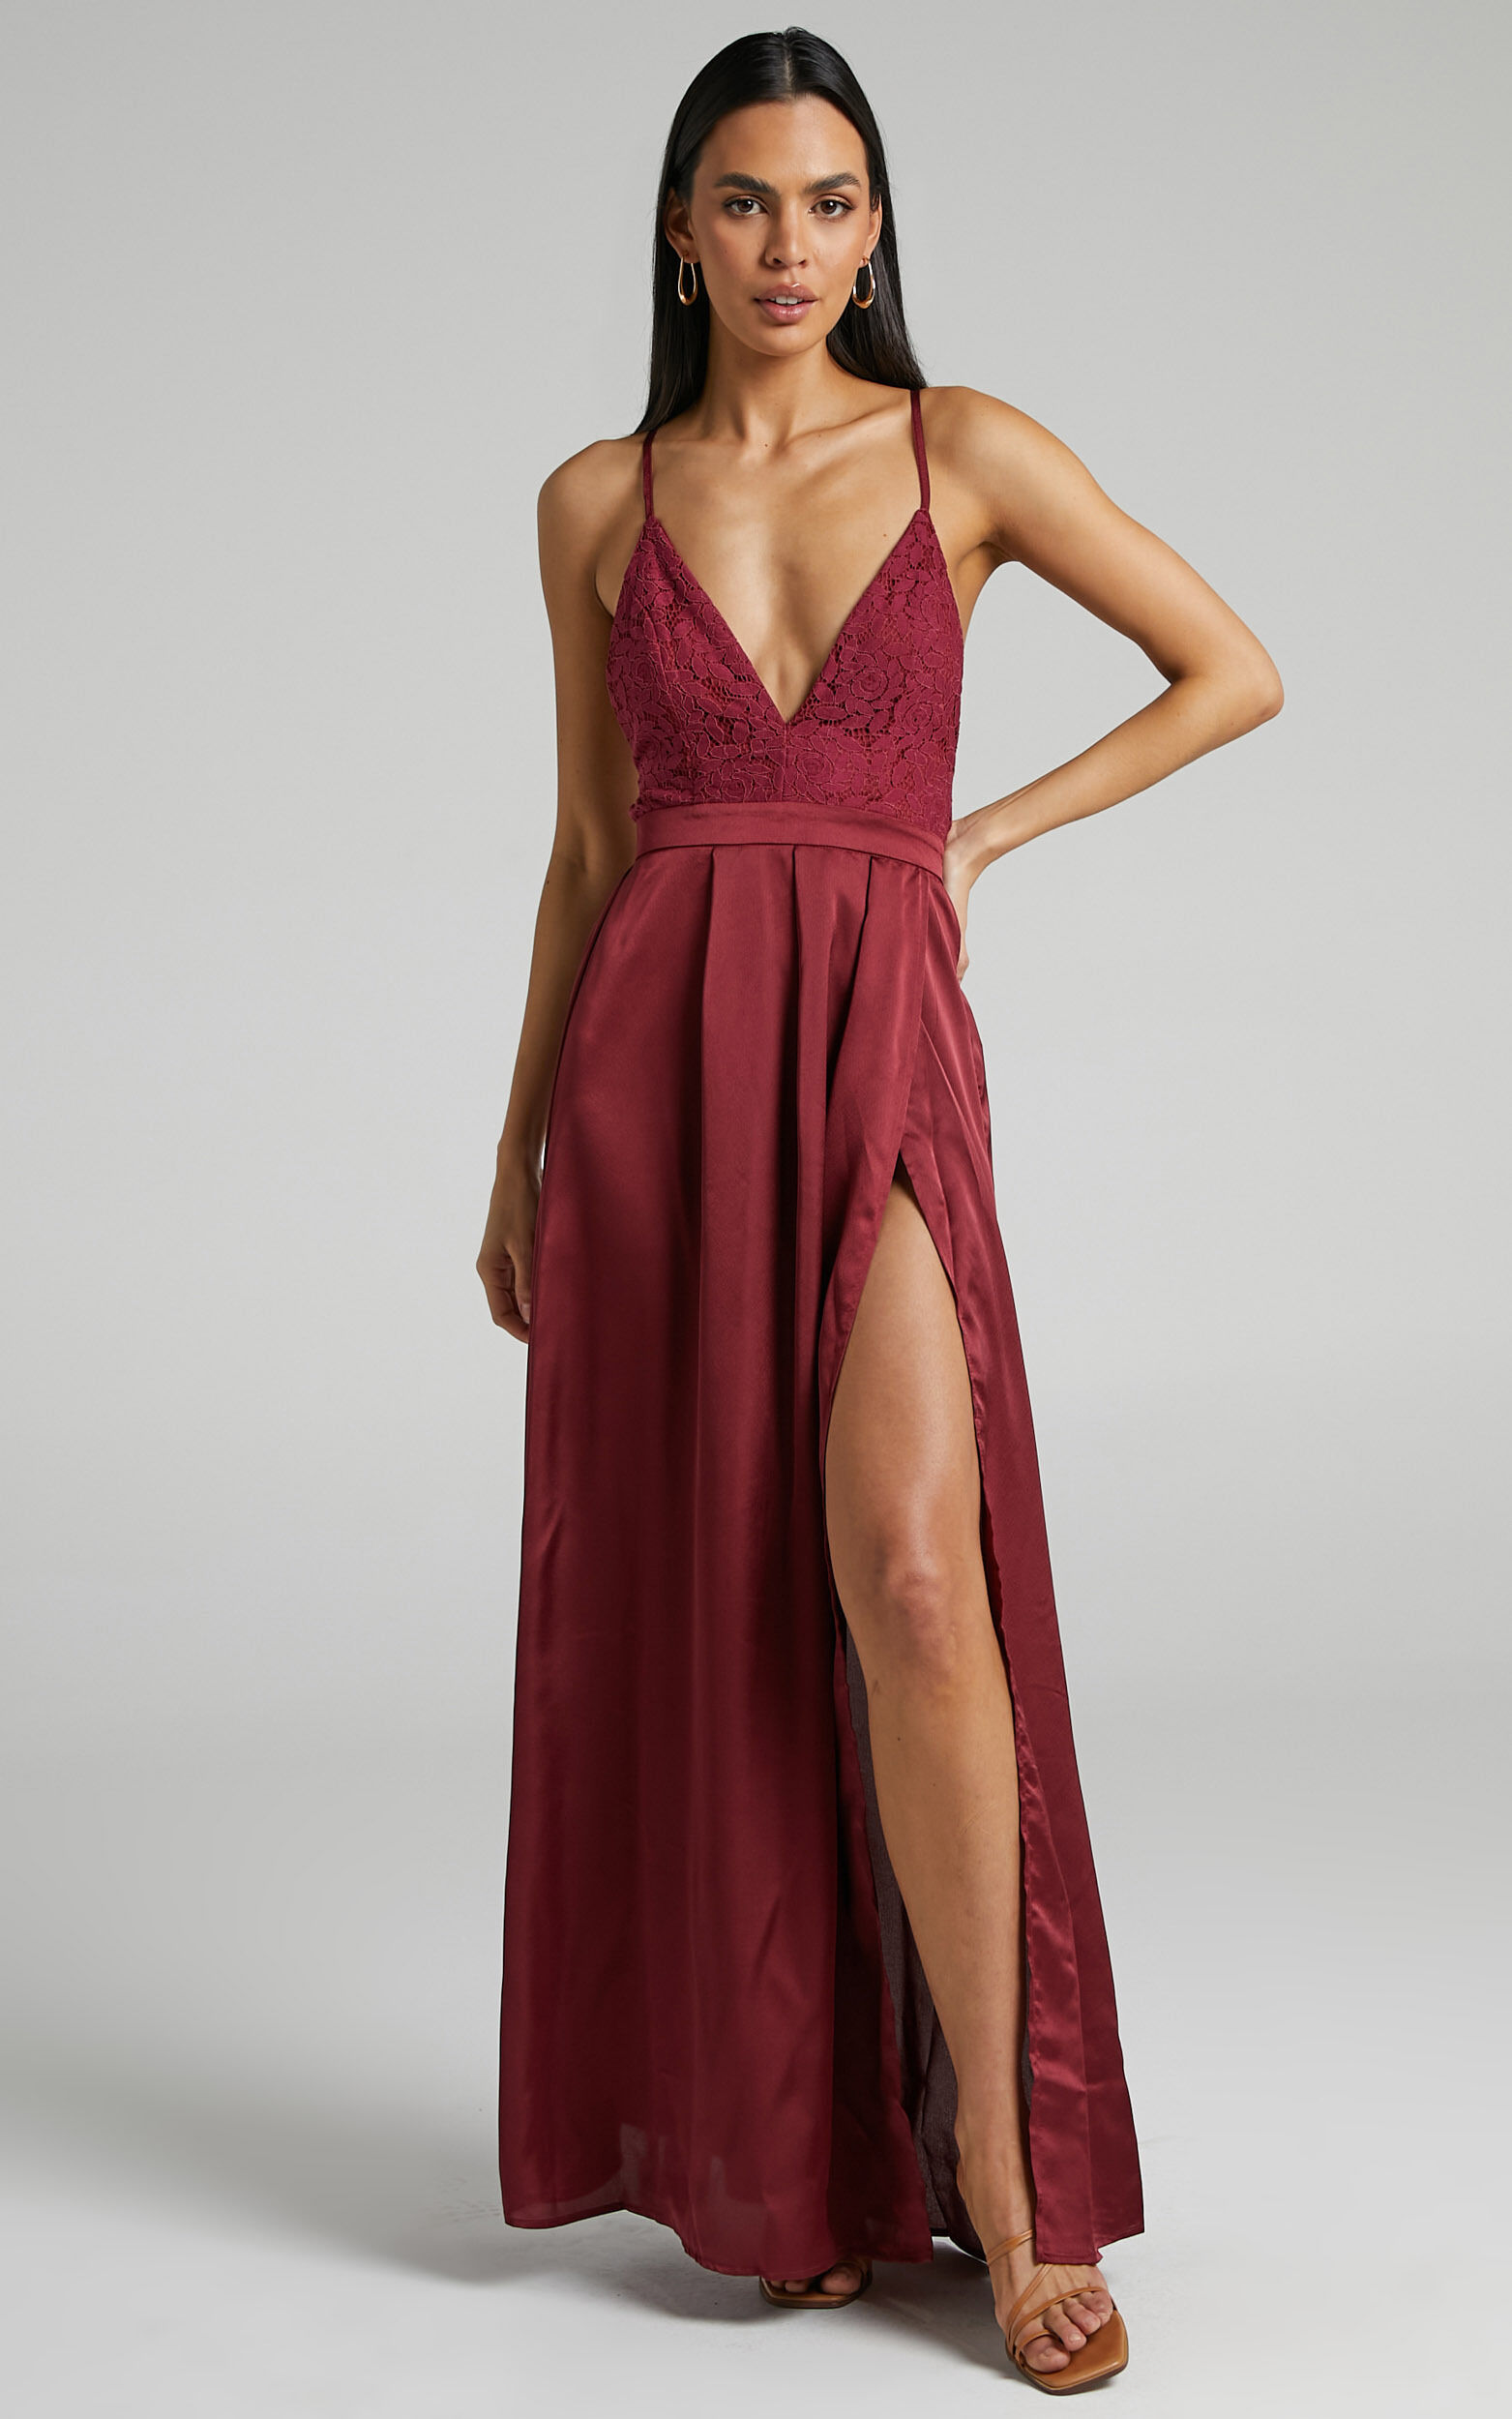 Inspired Tribe Plunge Neckline Thigh Split Maxi Dress in Wine | Showpo USA